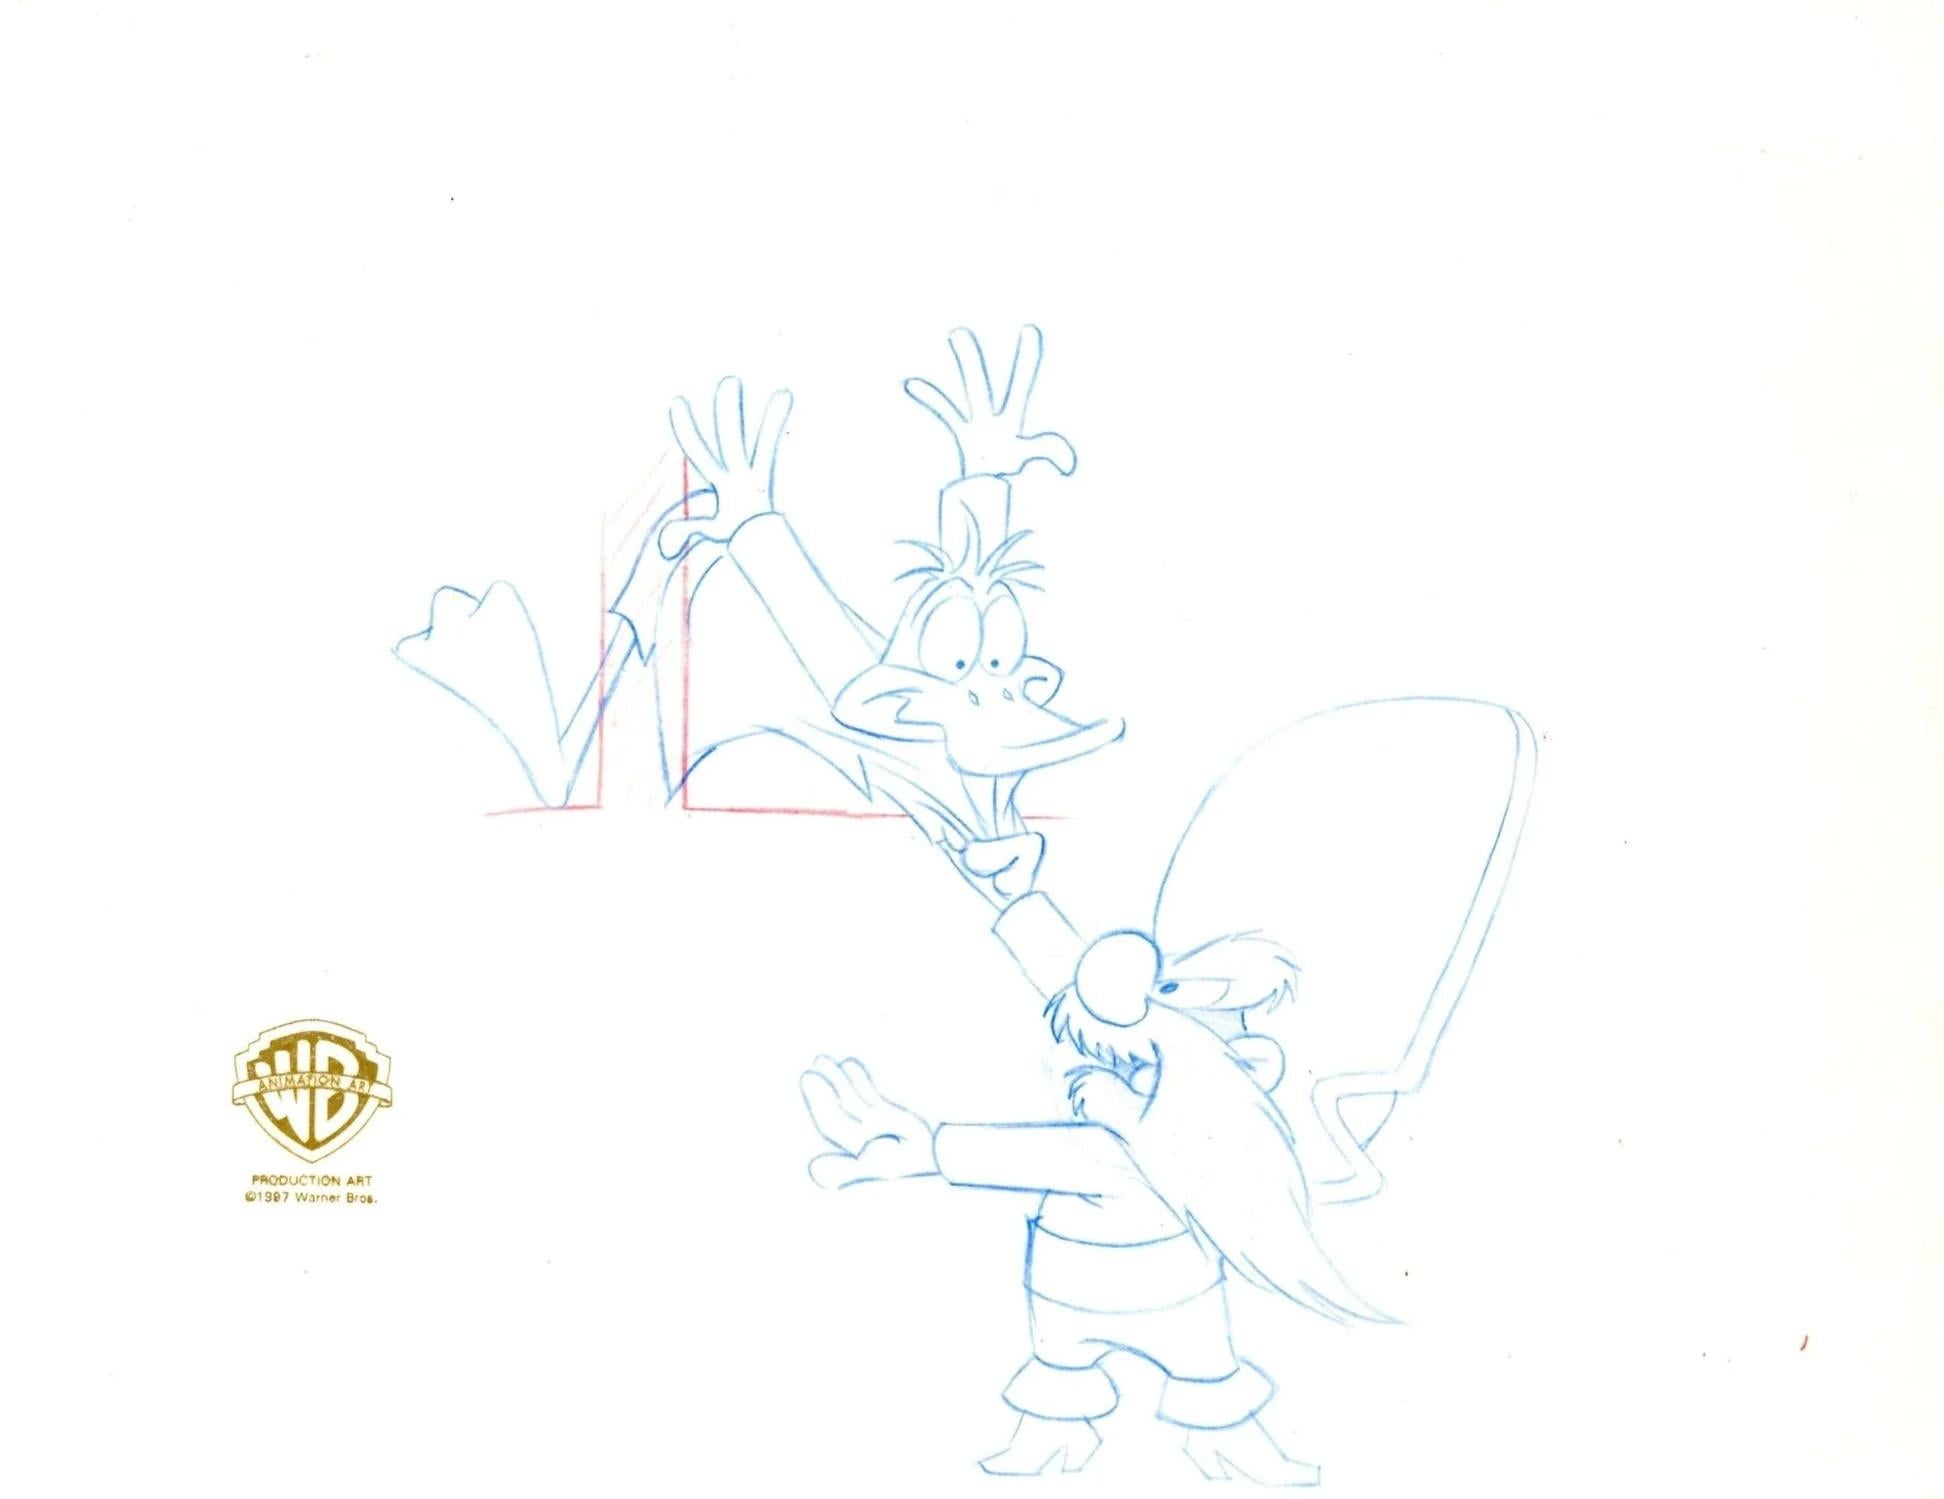 Looney Tunes Original-Produktionszeichnung: Daffy Duck und Yosemite Sam – Art von Looney Tunes Studio Artists